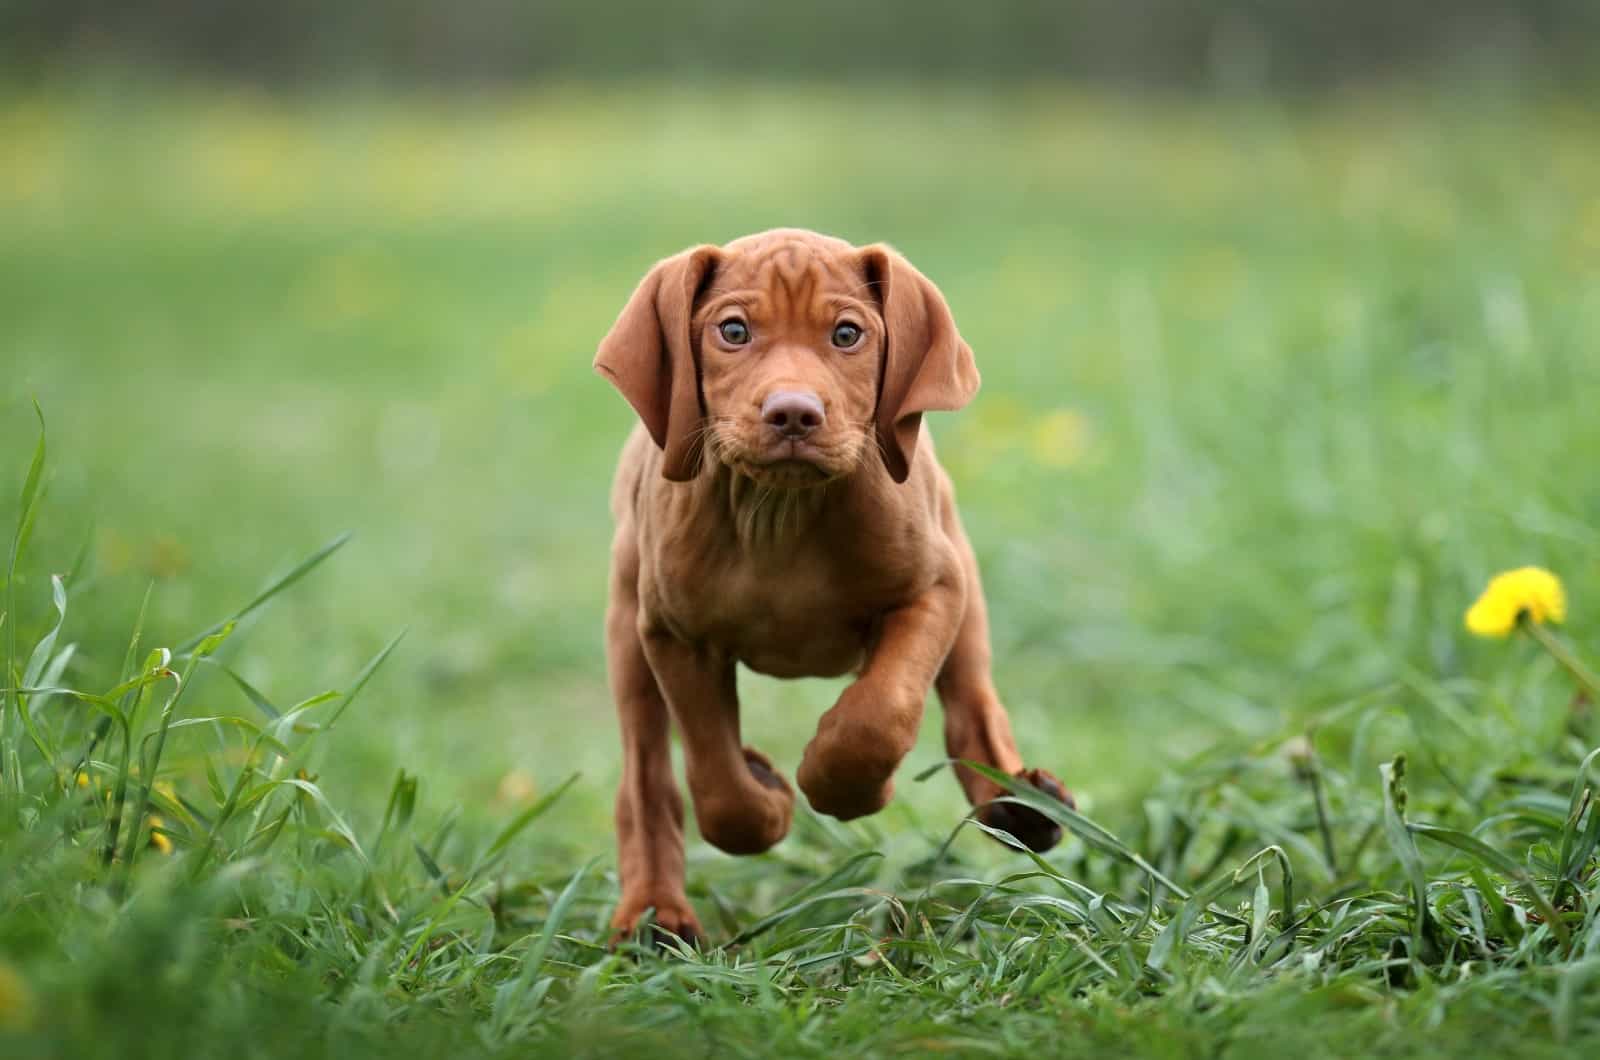 Vizsla puppy running on grass